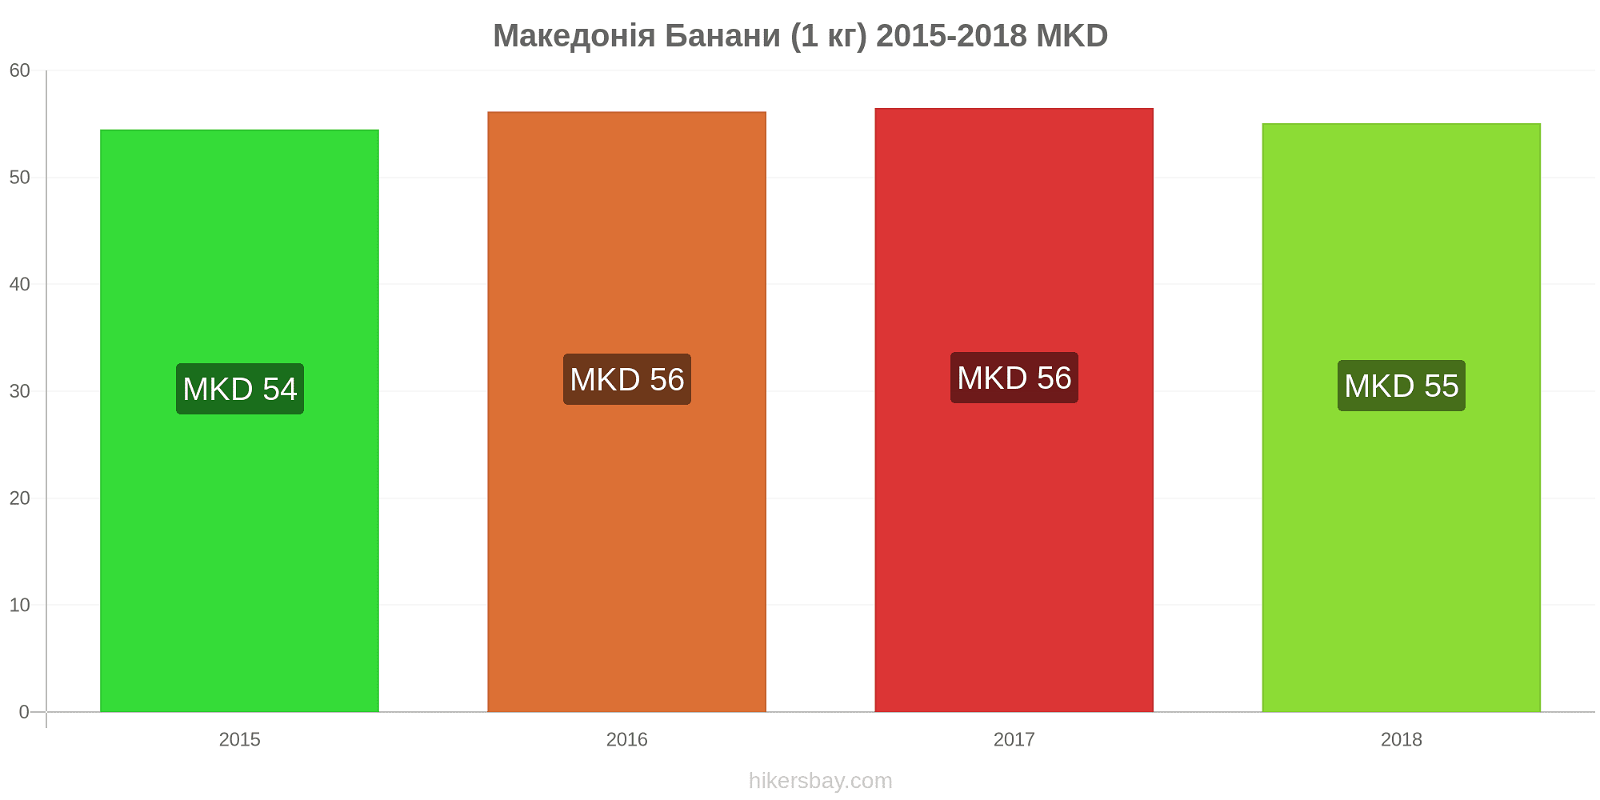 Македонія зміни цін Банани (1 кг) hikersbay.com